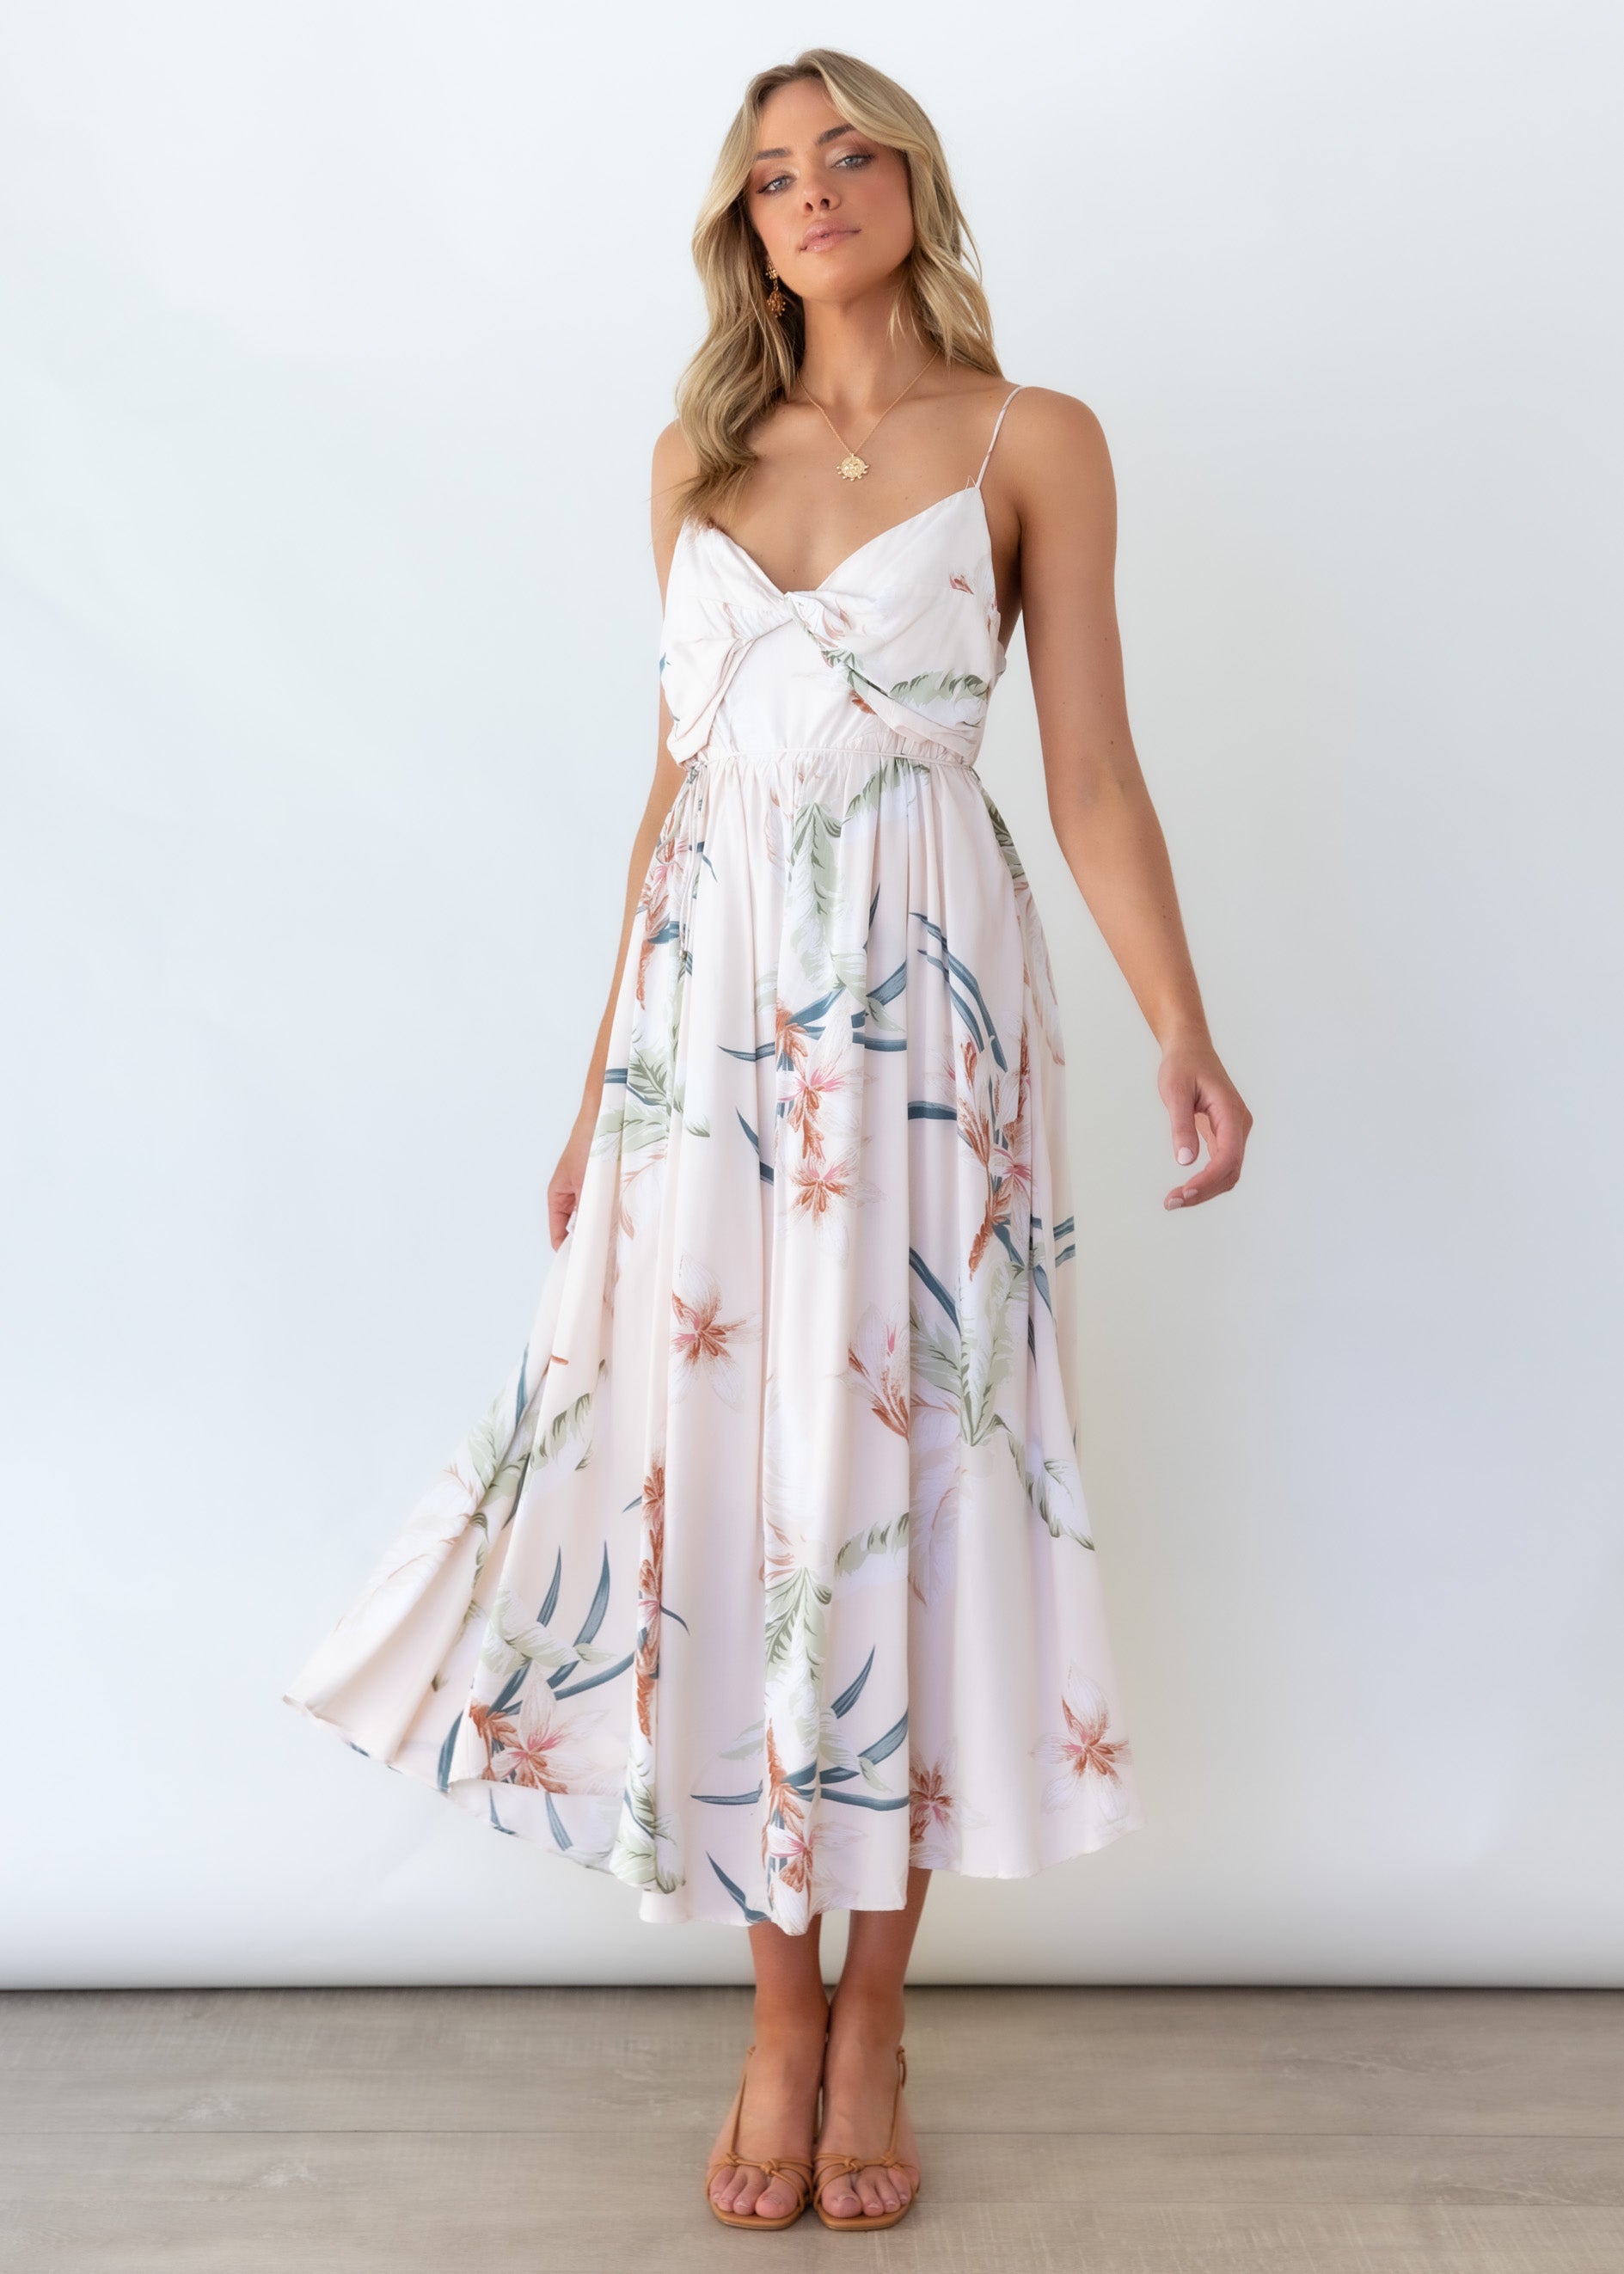 Williams Midi Dress - Beige Floral